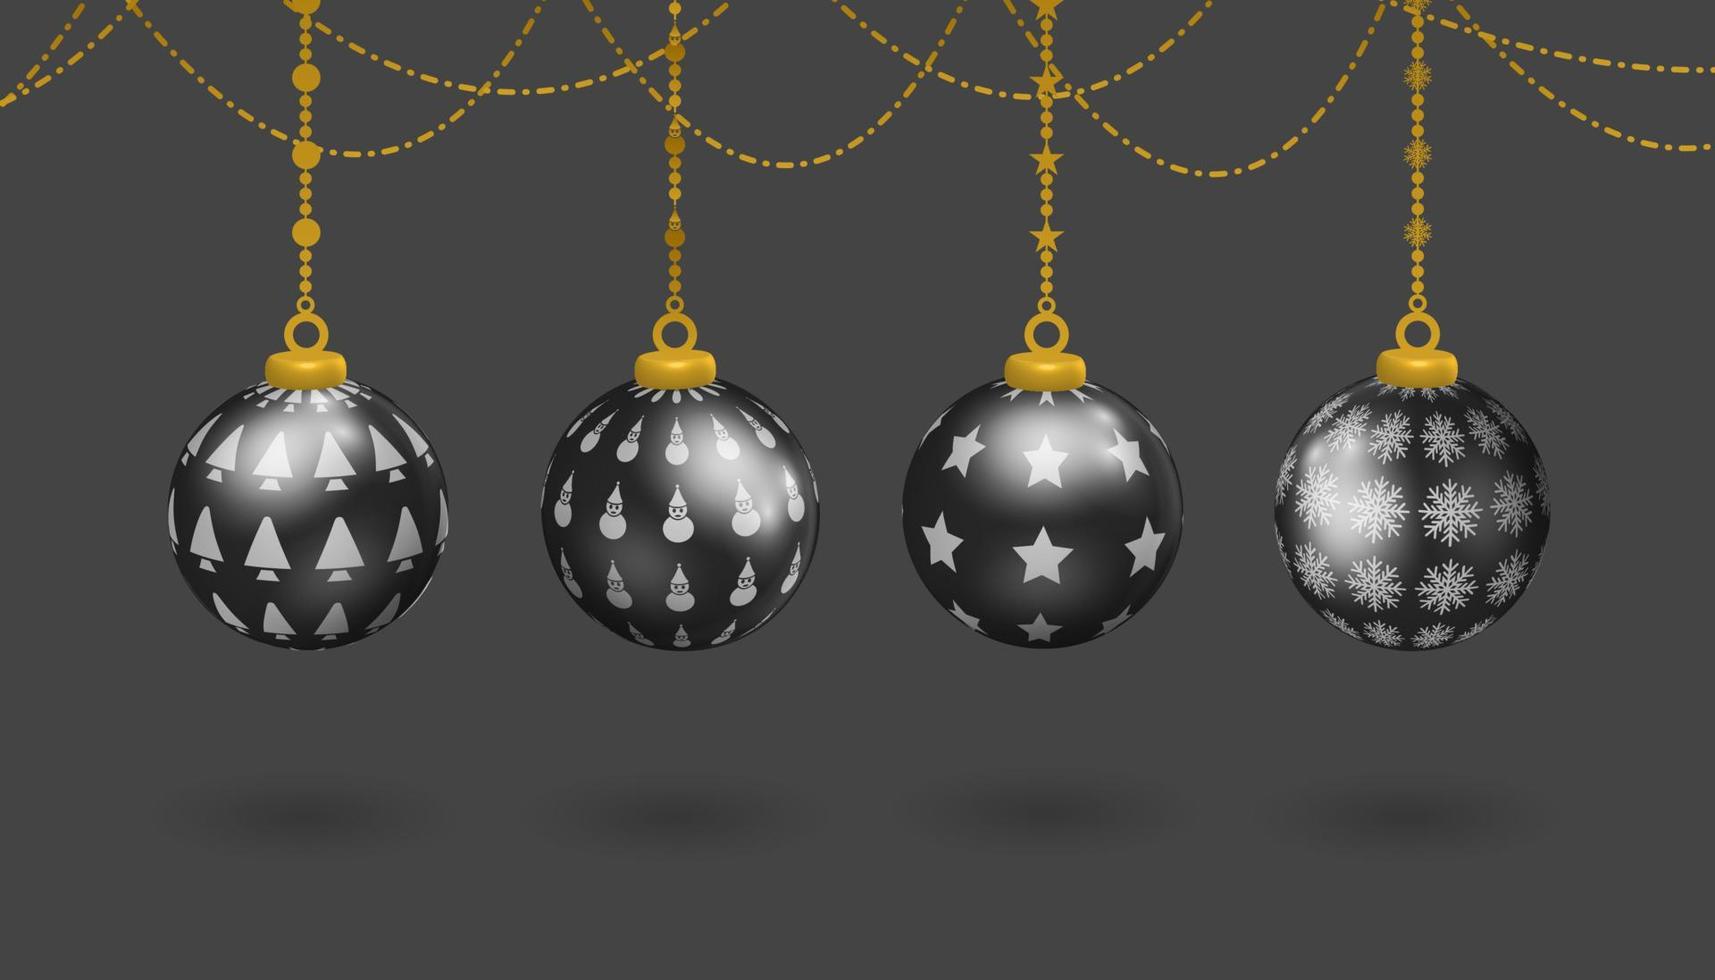 juego de decoración de bolas colgantes negras, con varios patrones de símbolos, muñeco de nieve, árbol de navidad, estrellas y copos de nieve, vector 3d realista decorativo de navidad